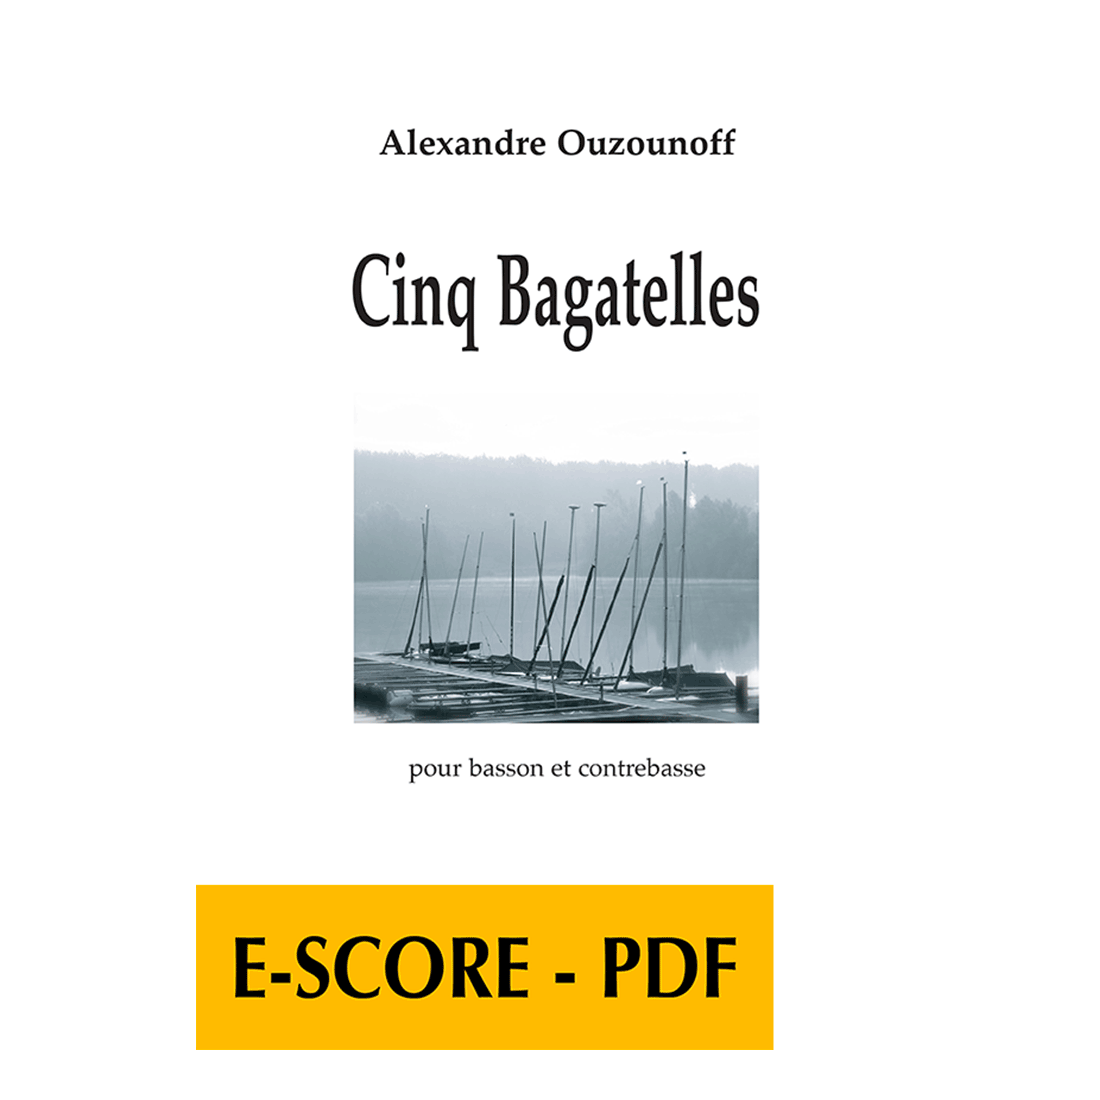 Cinq bagatelles für Fagott und Kontrabass - E-Score PDF